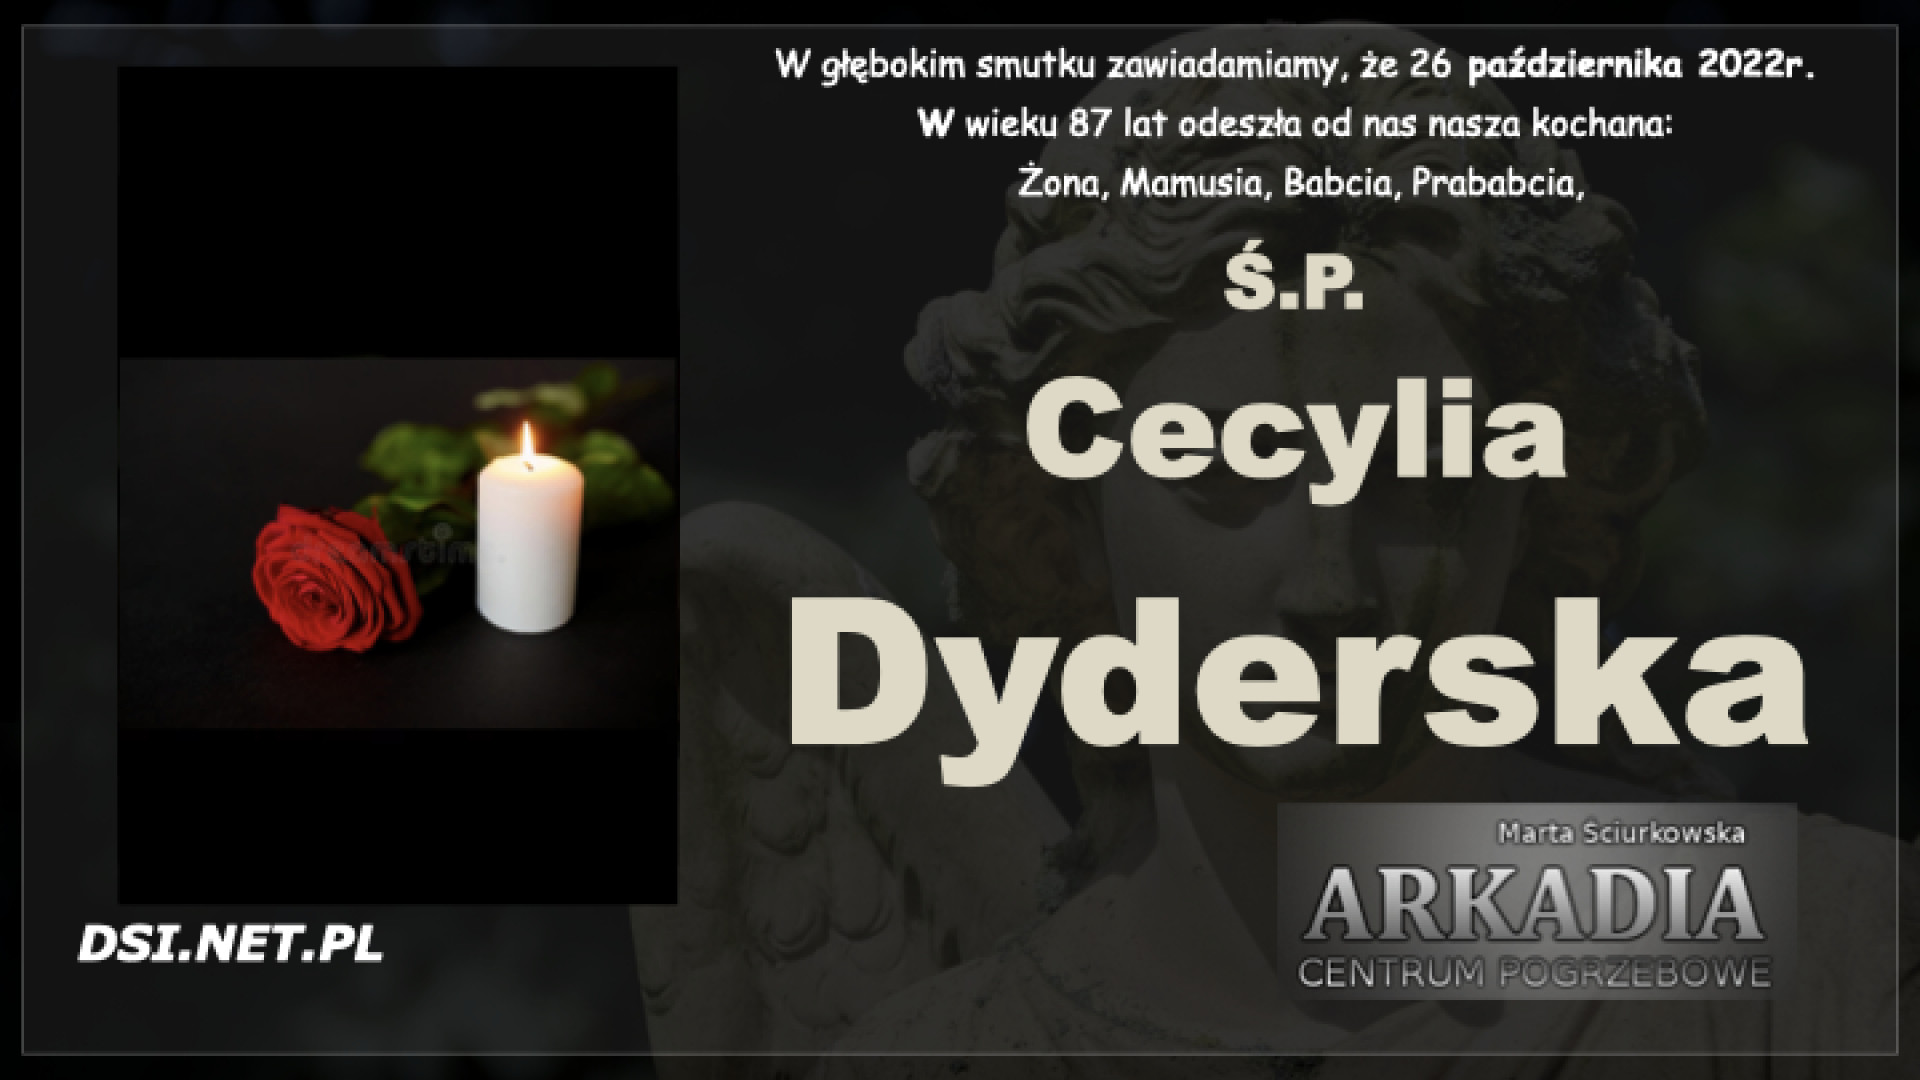 Ś.P. Cecylia Dyderska